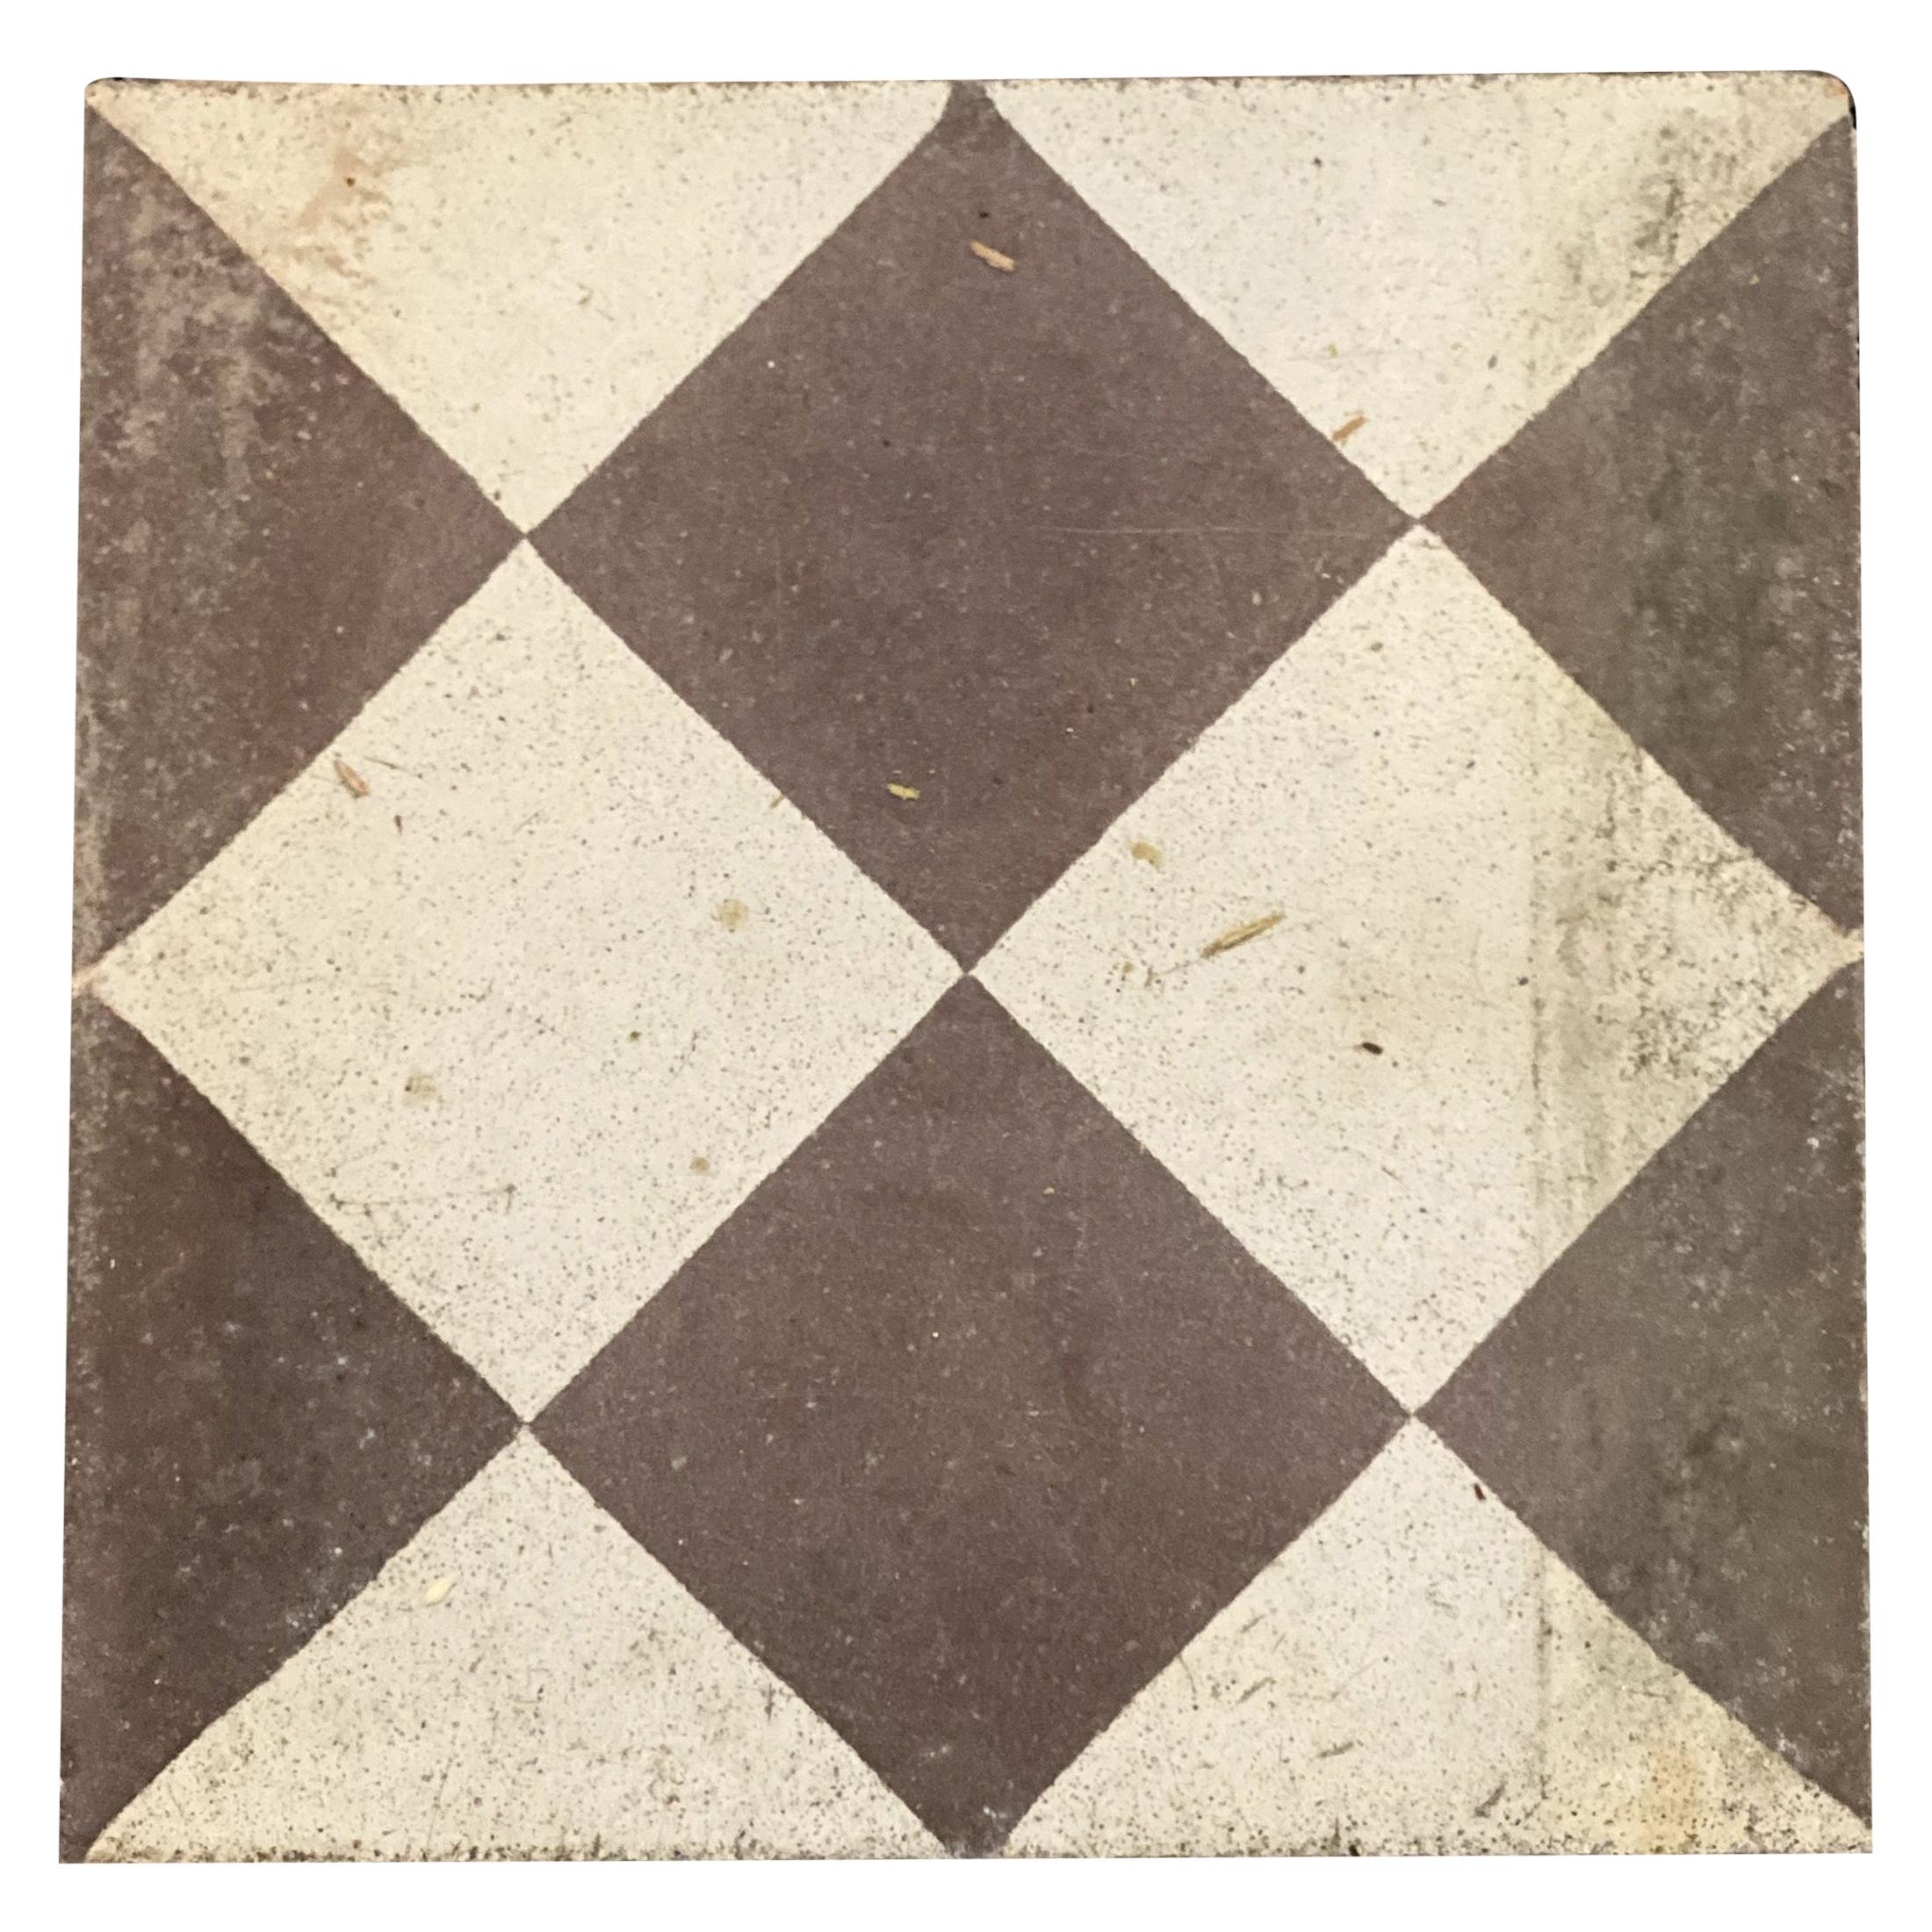 Geometric Reclaimed Tiles